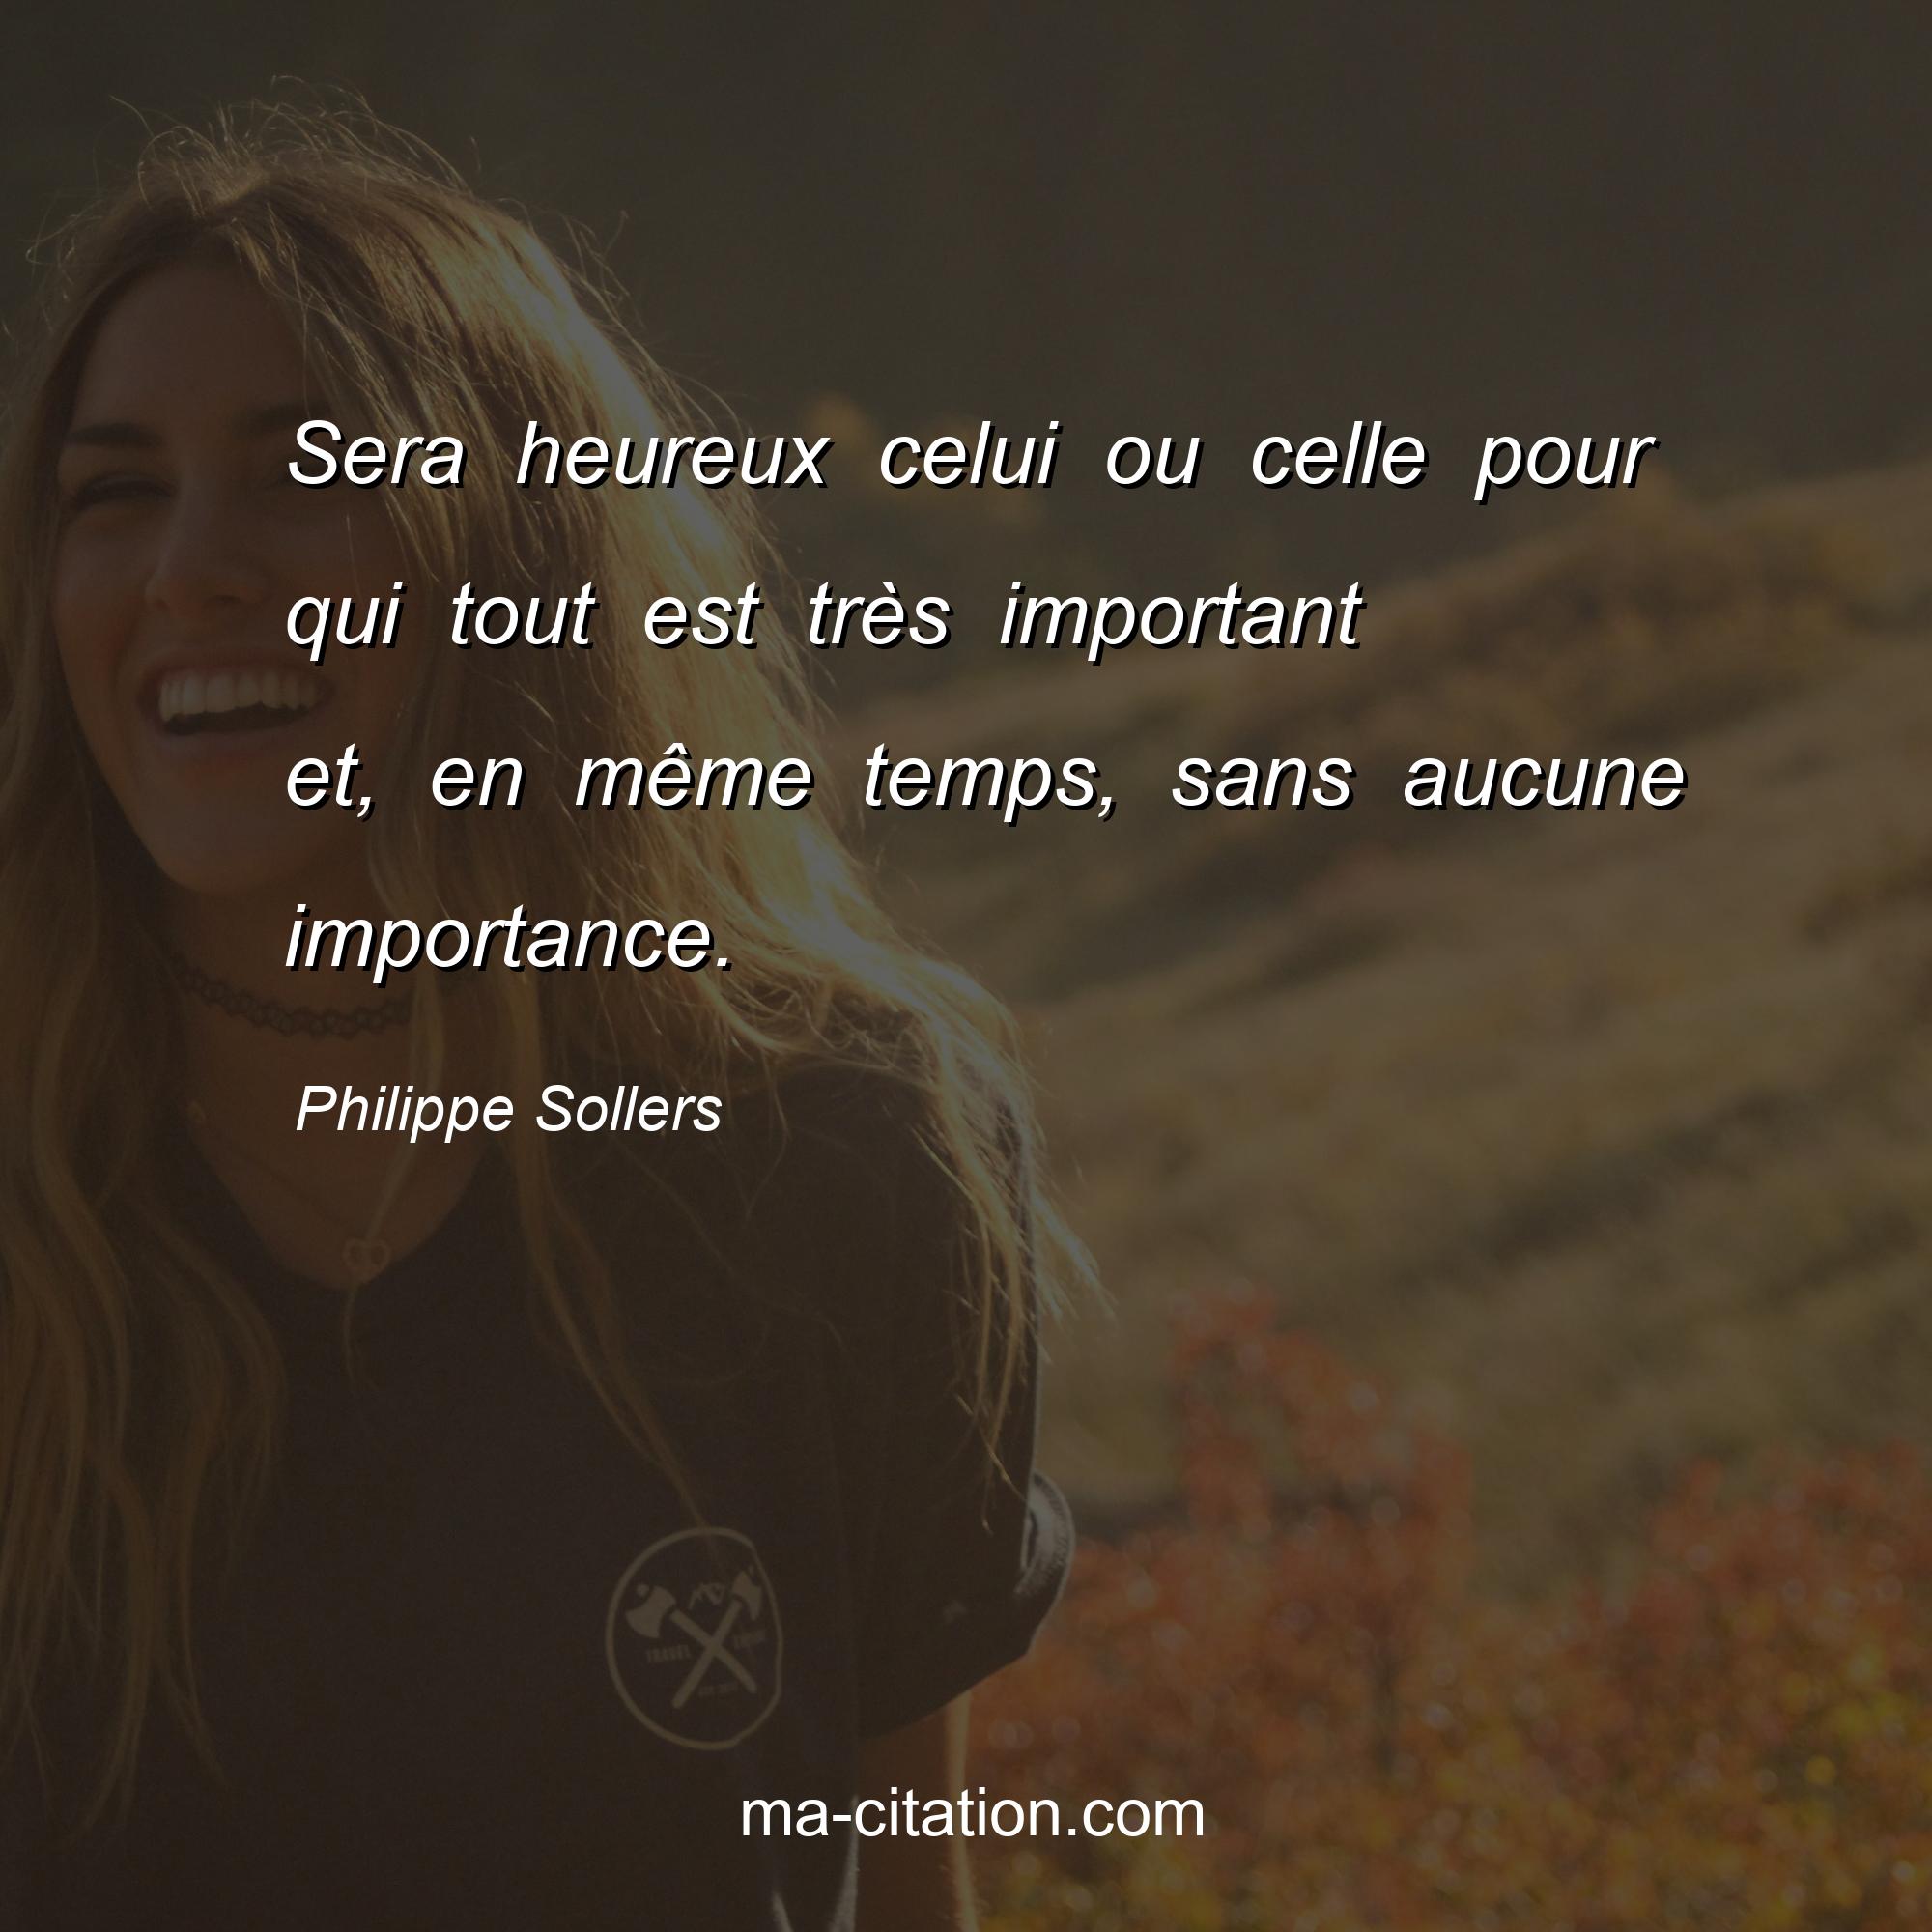 Philippe Sollers : Sera heureux celui ou celle pour qui tout est très important et, en même temps, sans aucune importance.